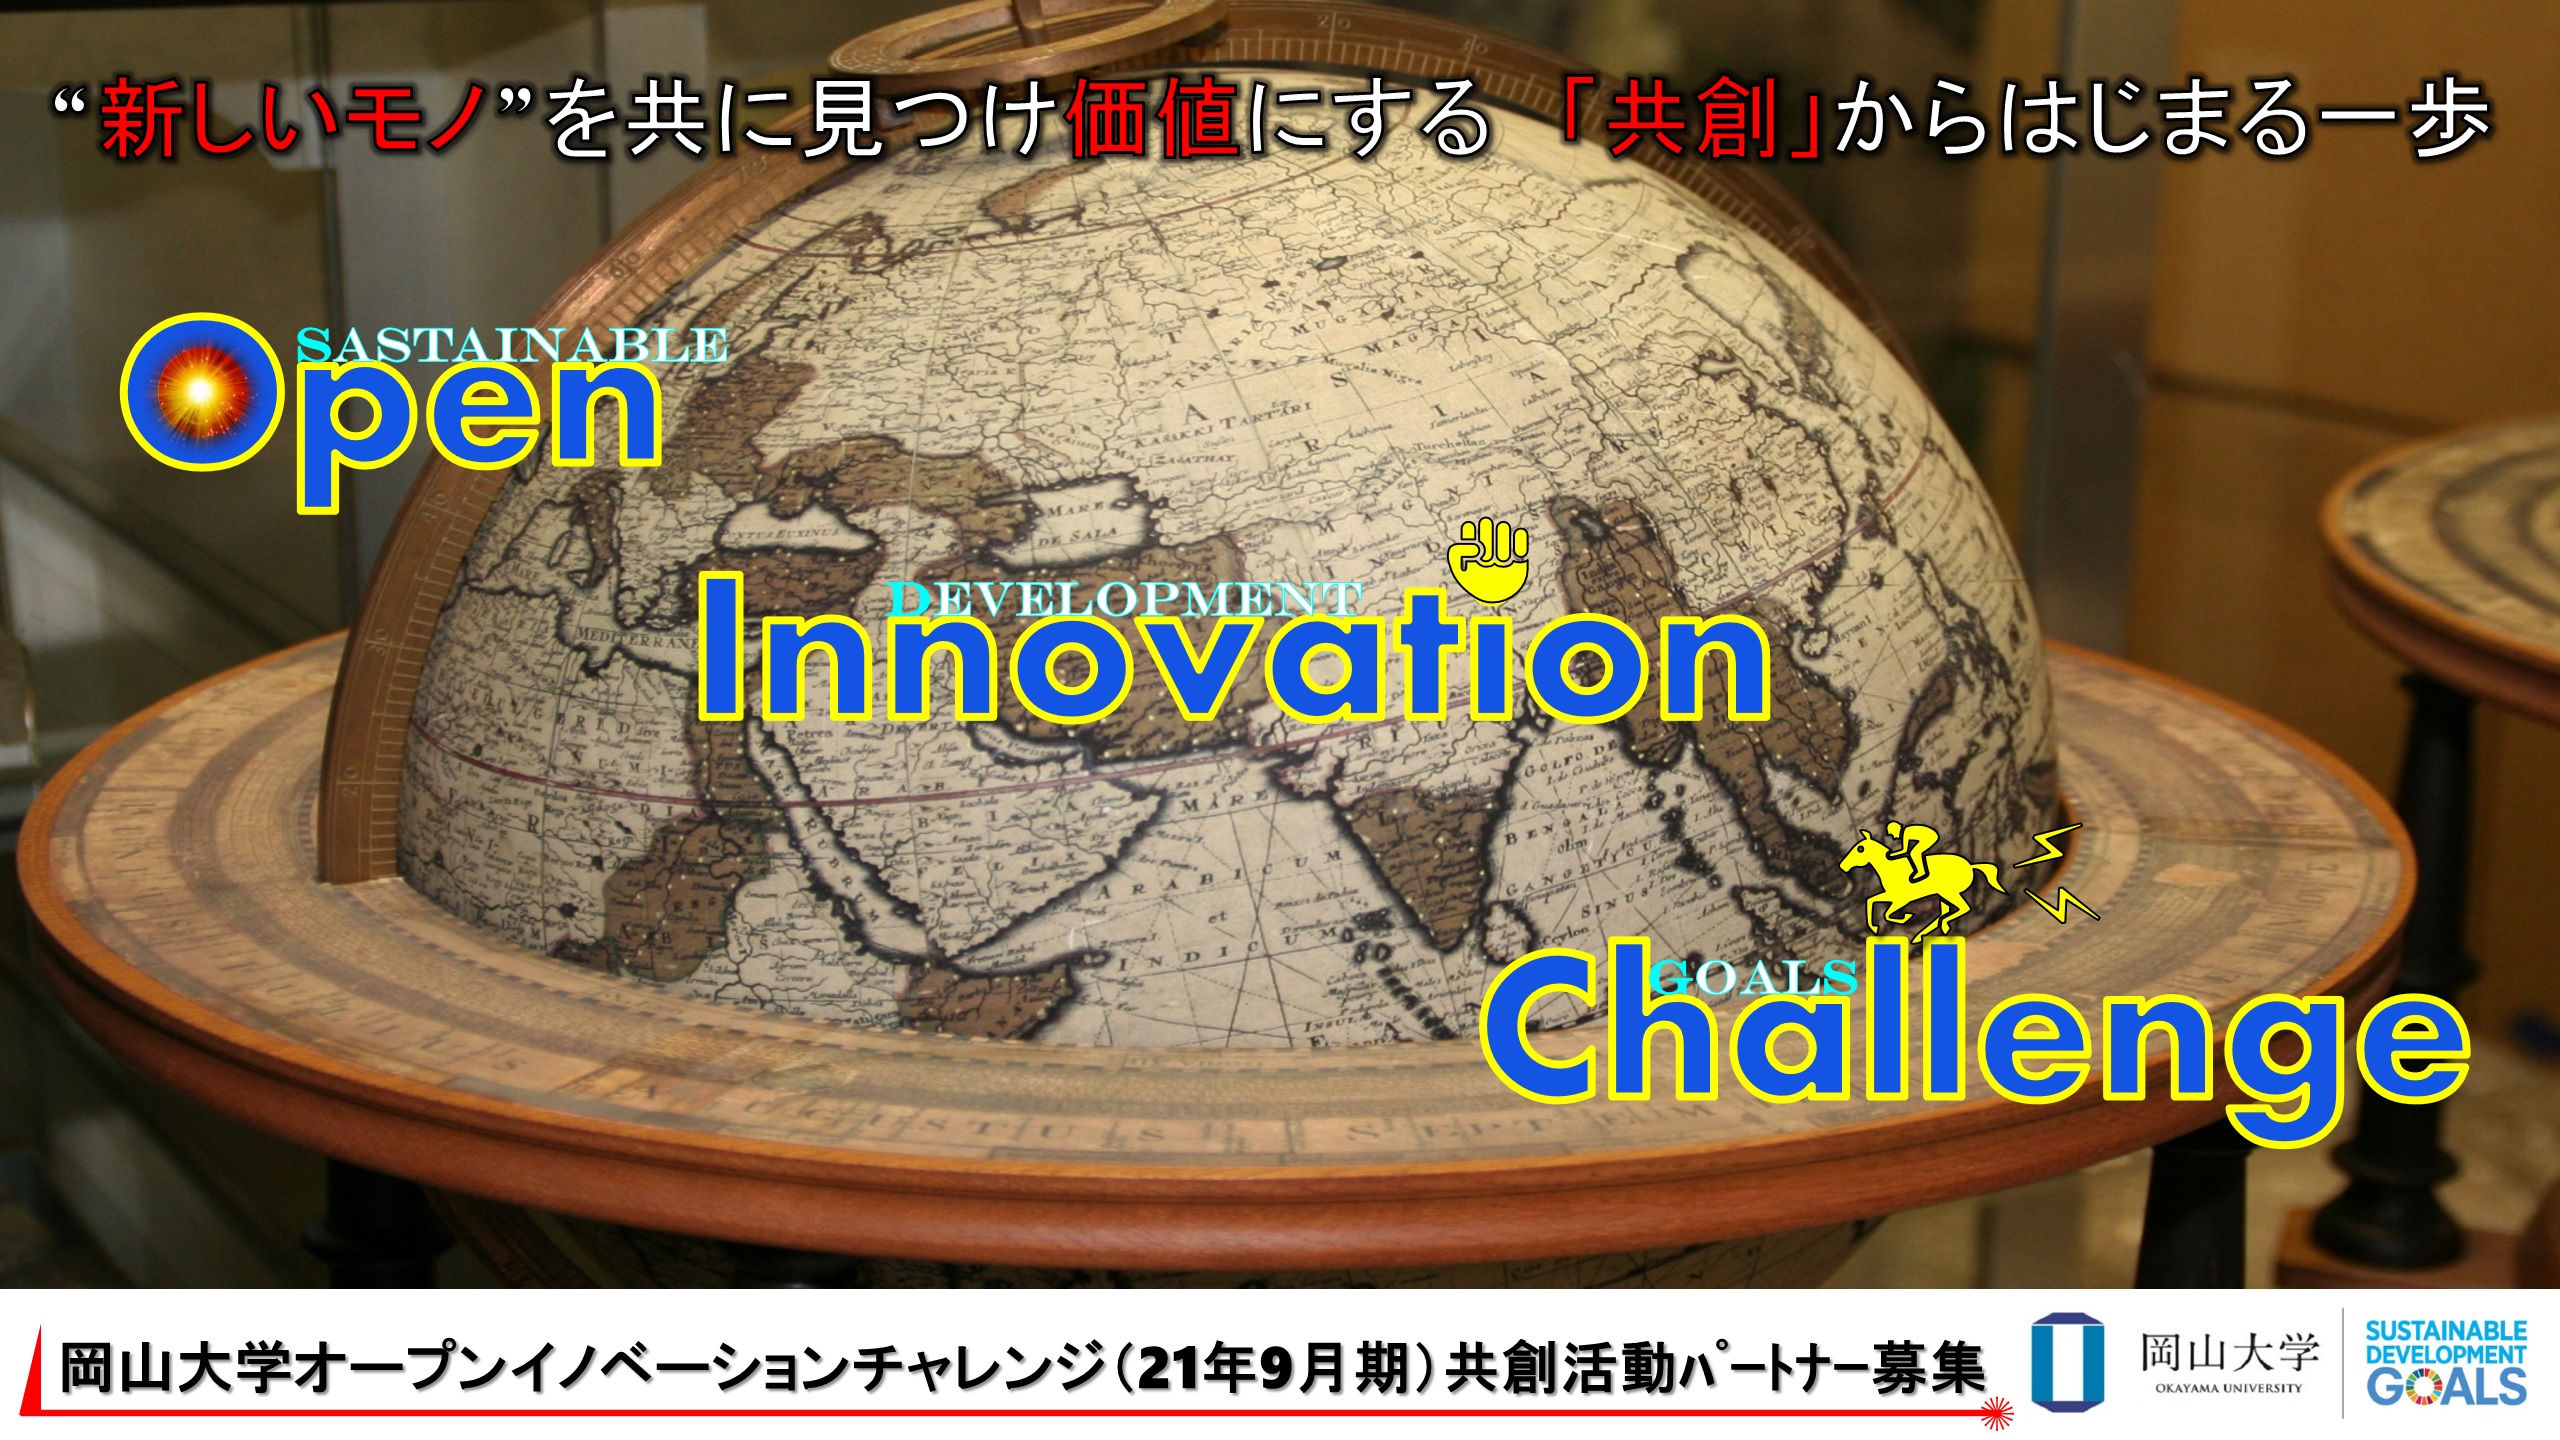 【岡山大学】産学共創活動「岡山大学オープンイノベーションチャレンジ」2021年9月期 共創活動パートナー募集開始のサブ画像1